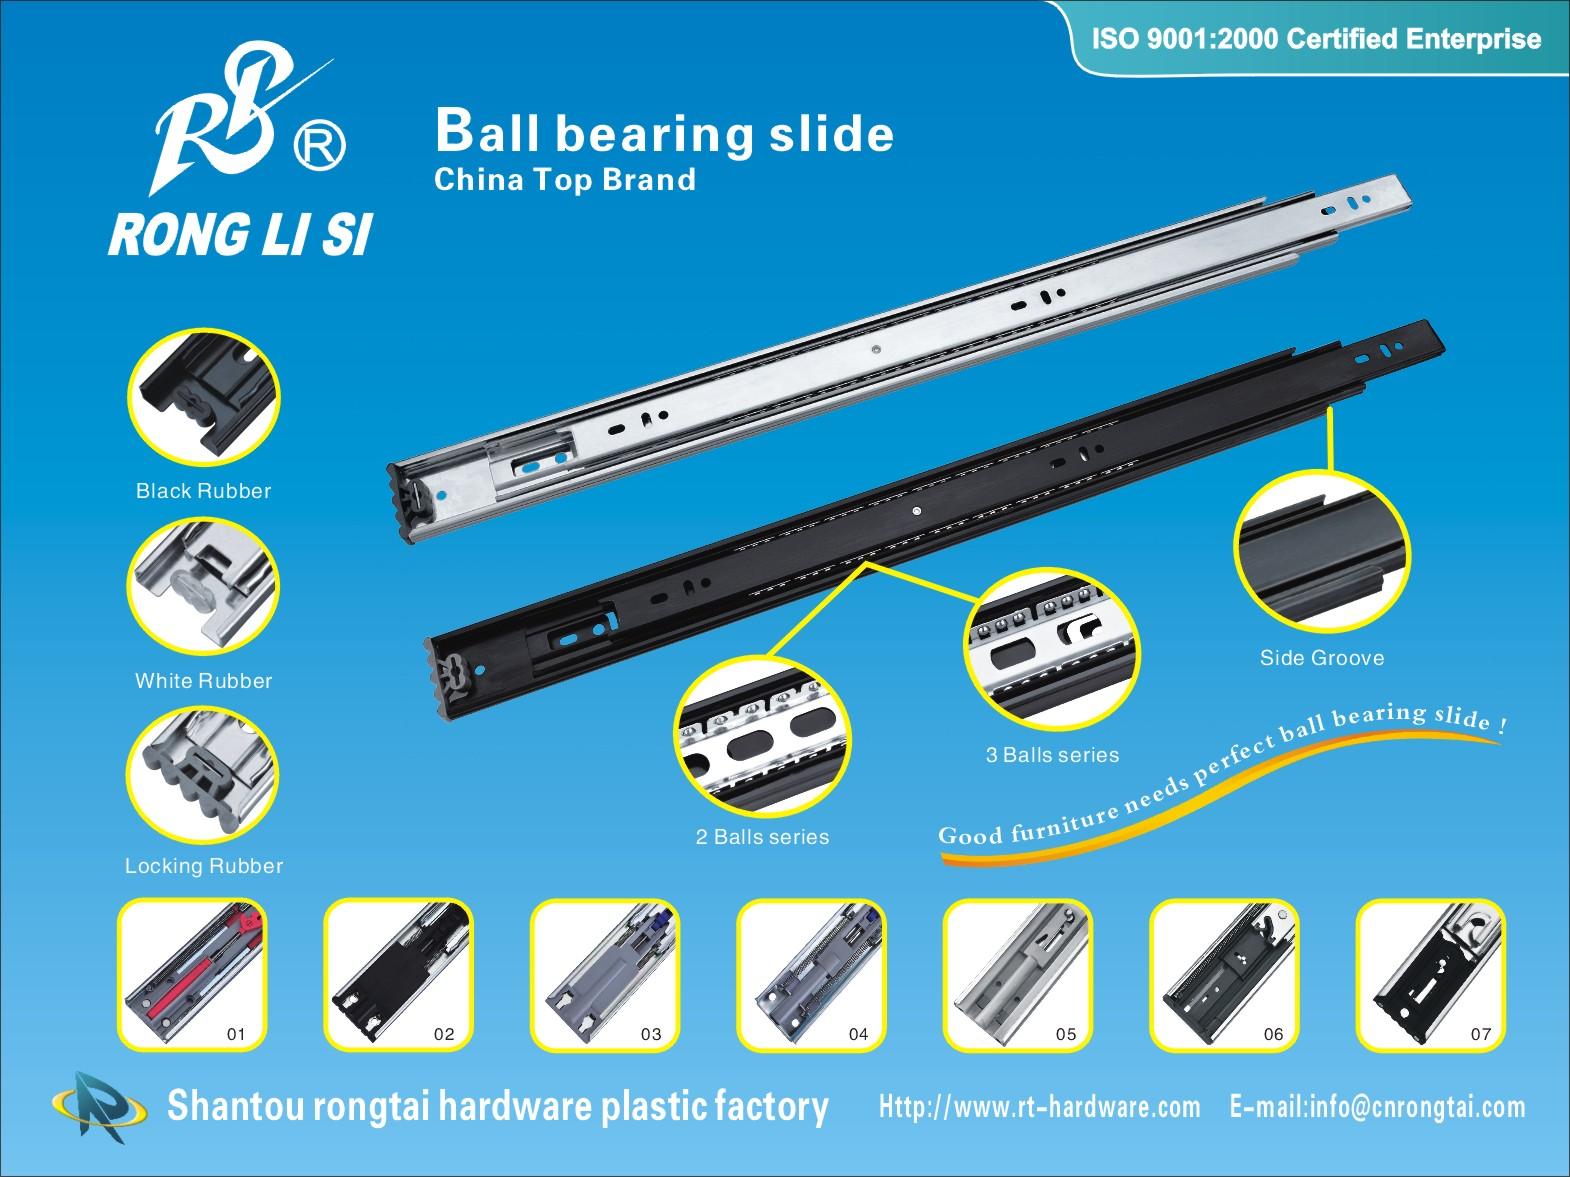 telescopic channel,slide,full extension ball bearing slideball bearing slide